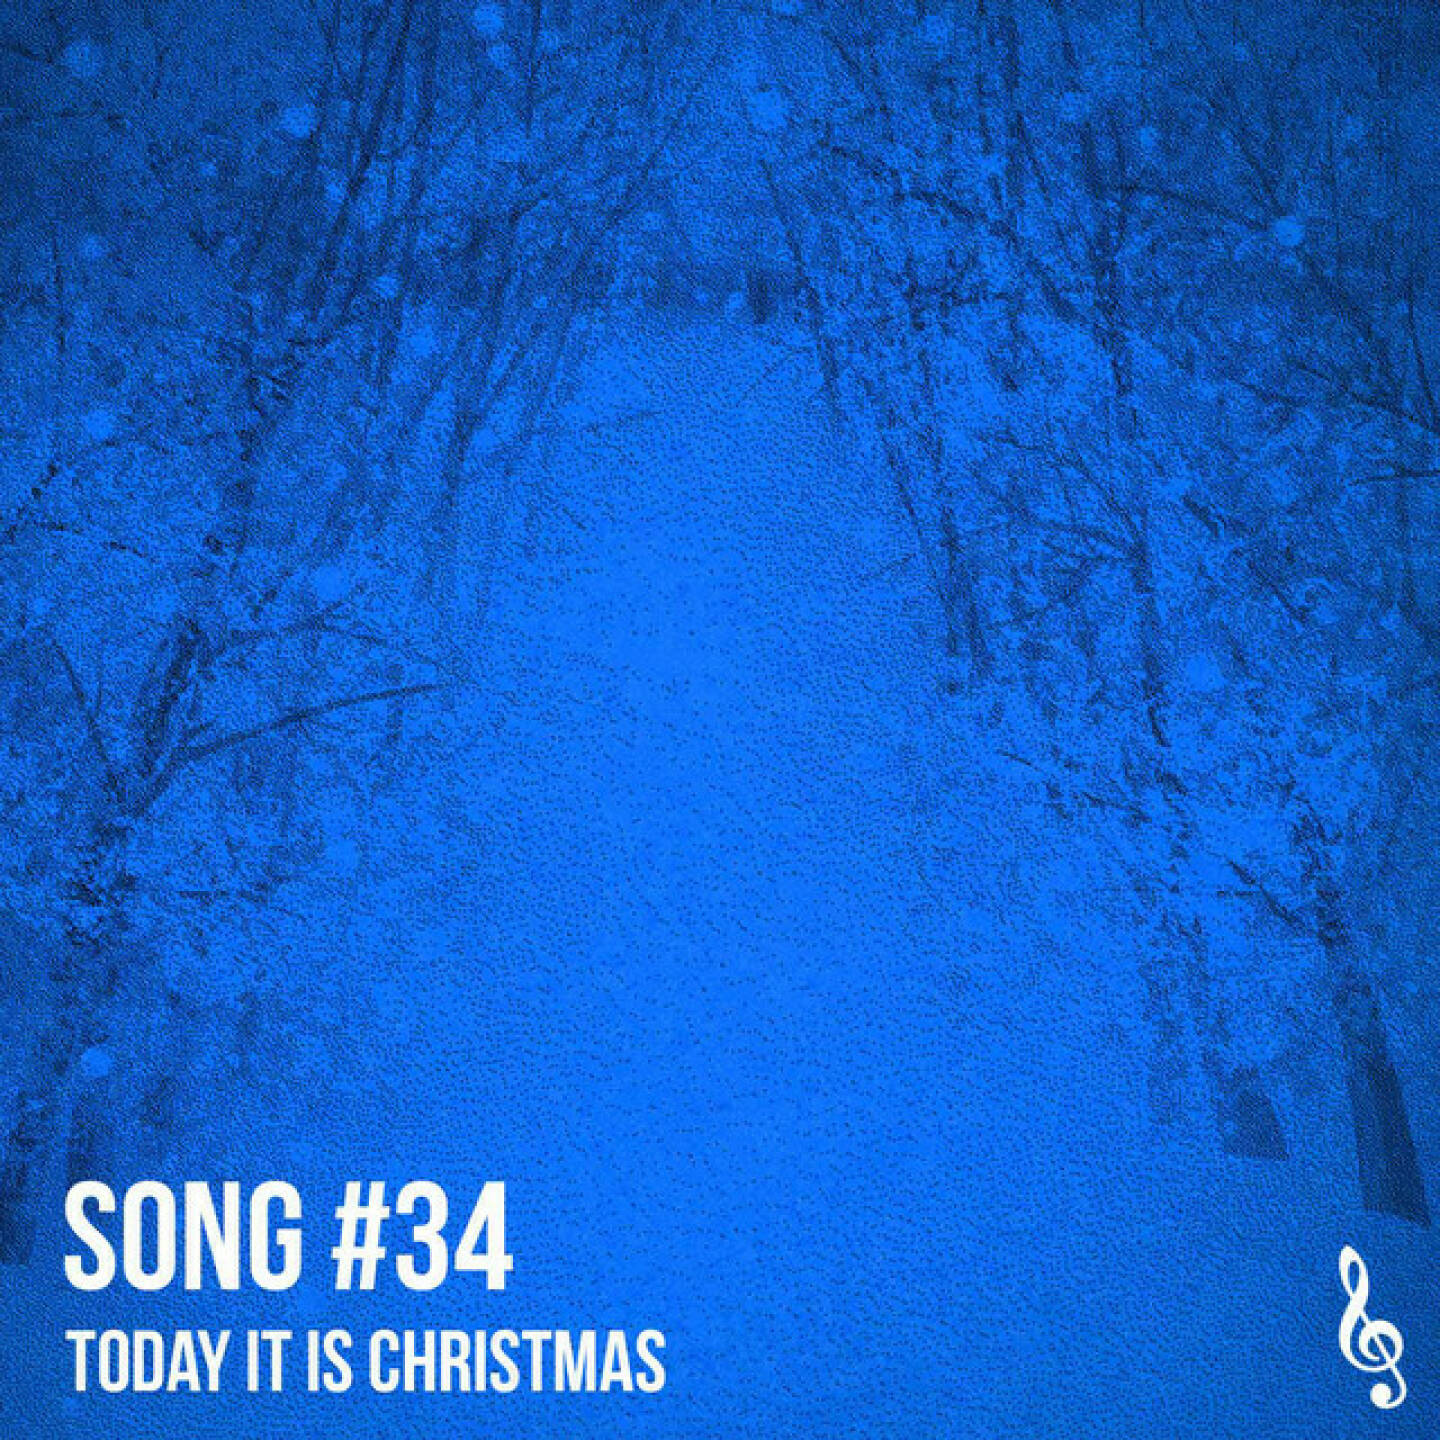 https://open.spotify.com/episode/7qA5j83ajRLzh7YaWEIfJP
#Song 34: Today it is Christmas - Zum 2. Adventsonntag wie angekündigt der 2. selbstkomponierte Weihnachtssong. Michi hat das in den 80ern des alten Jahrtausends geschrieben und aufgenommen: Hier eine Version, die wir Ende November 2022 gemeinsam neu eingespielt haben, Michi hat sich viele Facetten überlegt, Leadstimme, zweite Stimmen und Gitarre beigesteuert, von mir kommen Arrangement und Sounds, sowie ebenfalls zweite Stimmen und Background-Chor. Wir hoffen, es gefällt.<br/>Song zum 1. Adventsonntag war Christmas Time Forever 2022: https://audio-cd.at/page/podcast/3642<br/>Playlist mit ein paar unserer Songs: https://open.spotify.com/playlist/63tRnVh3aIOlhrdUKvb4P<br/>Bewertungen bei Apple machen uns Freude: https://podcasts.apple.com/at/podcast/christian-drastil-wiener-börse-sport-musik-und-mehr-my -life/id1484919130  .